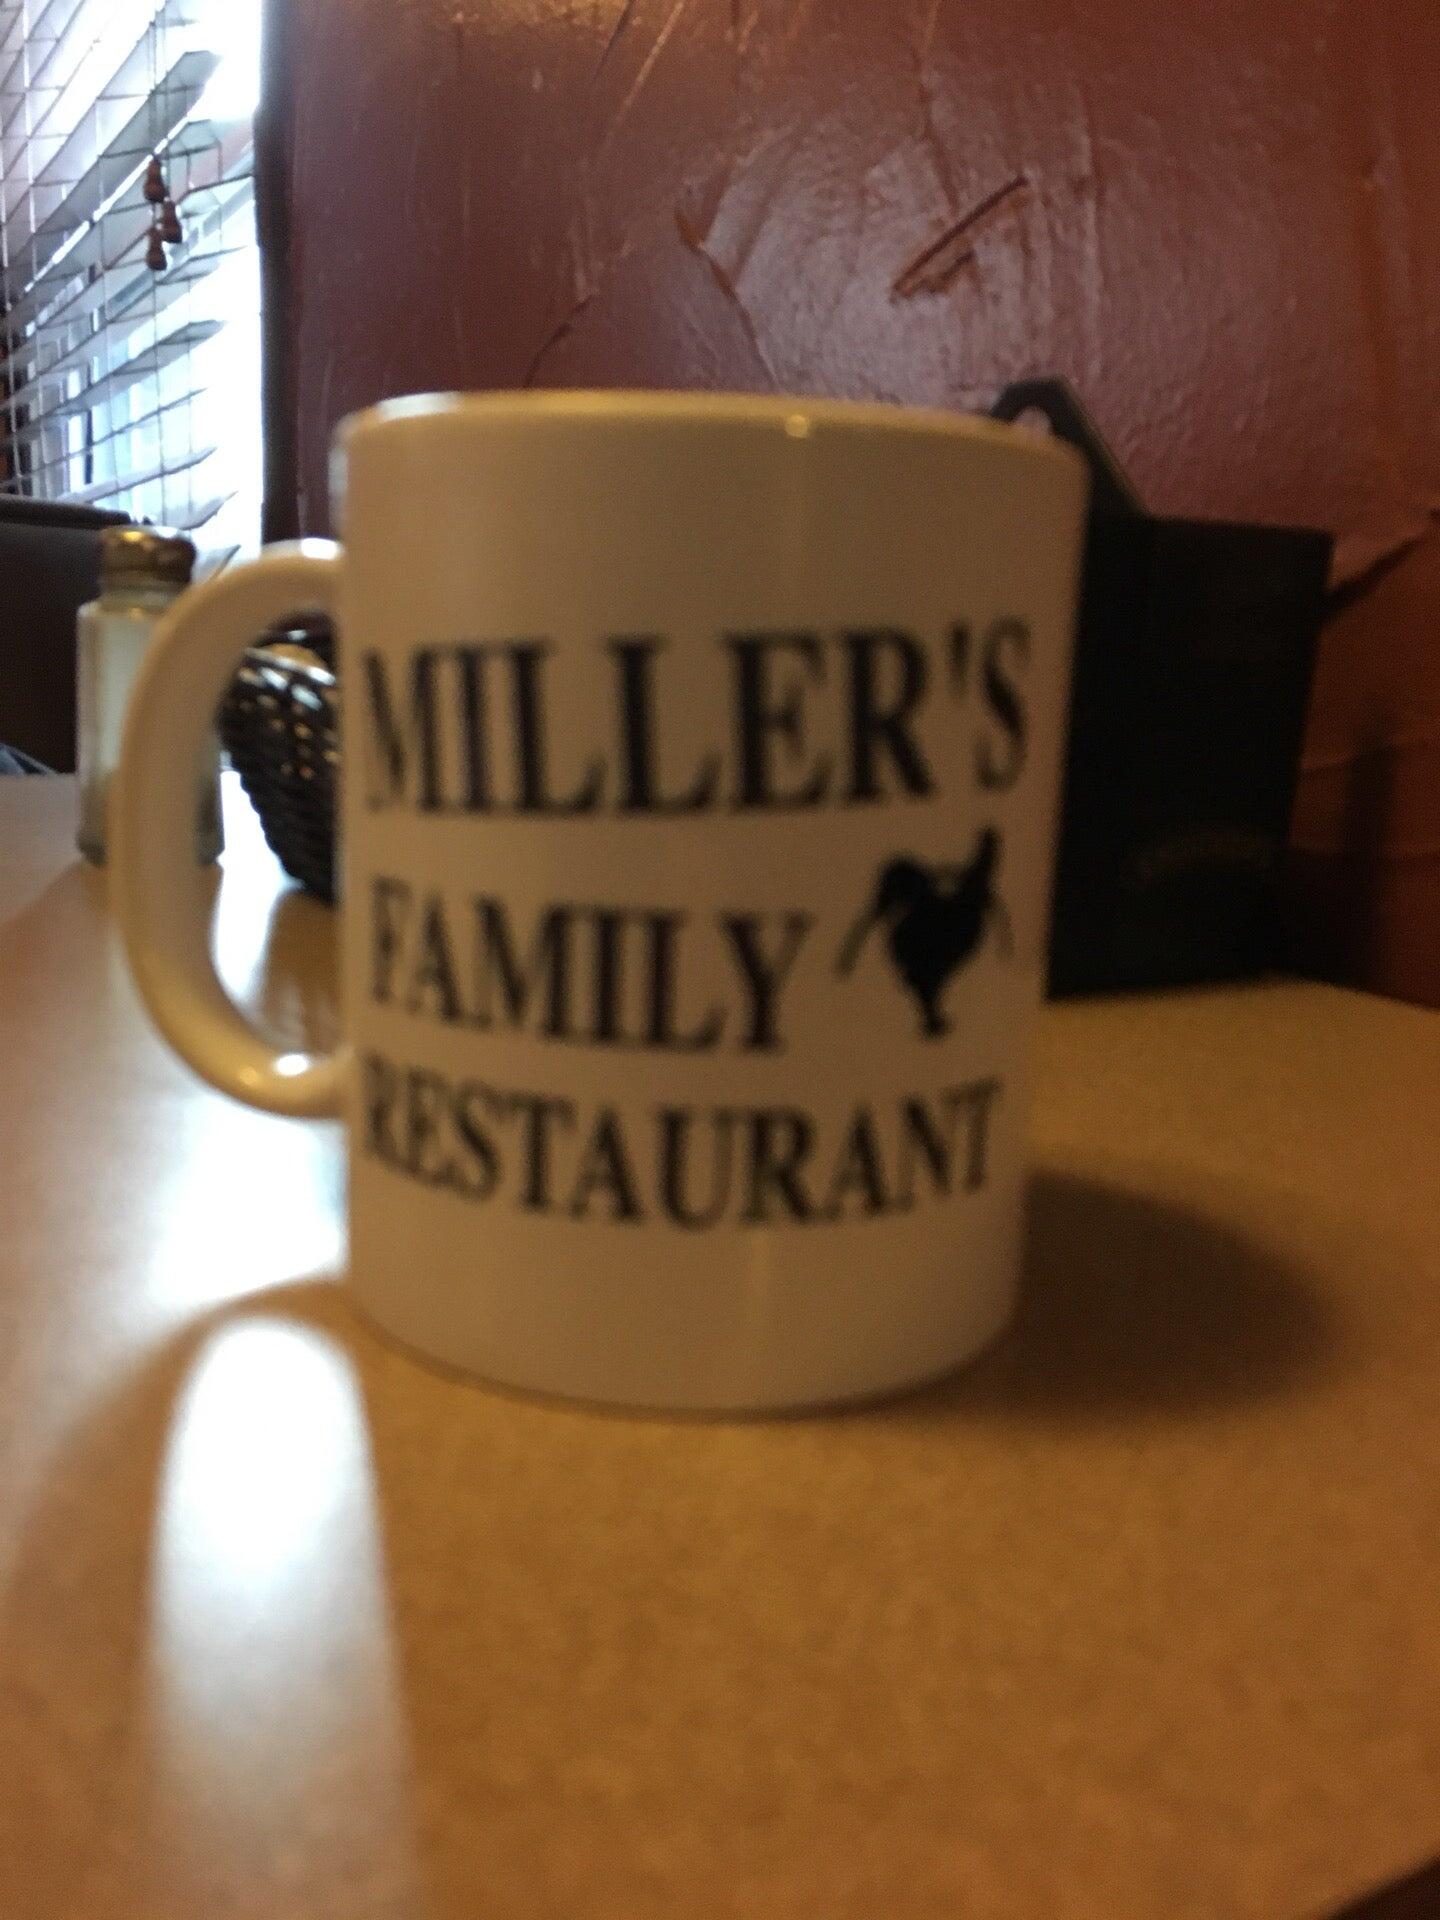 Miller's Family Restaurant